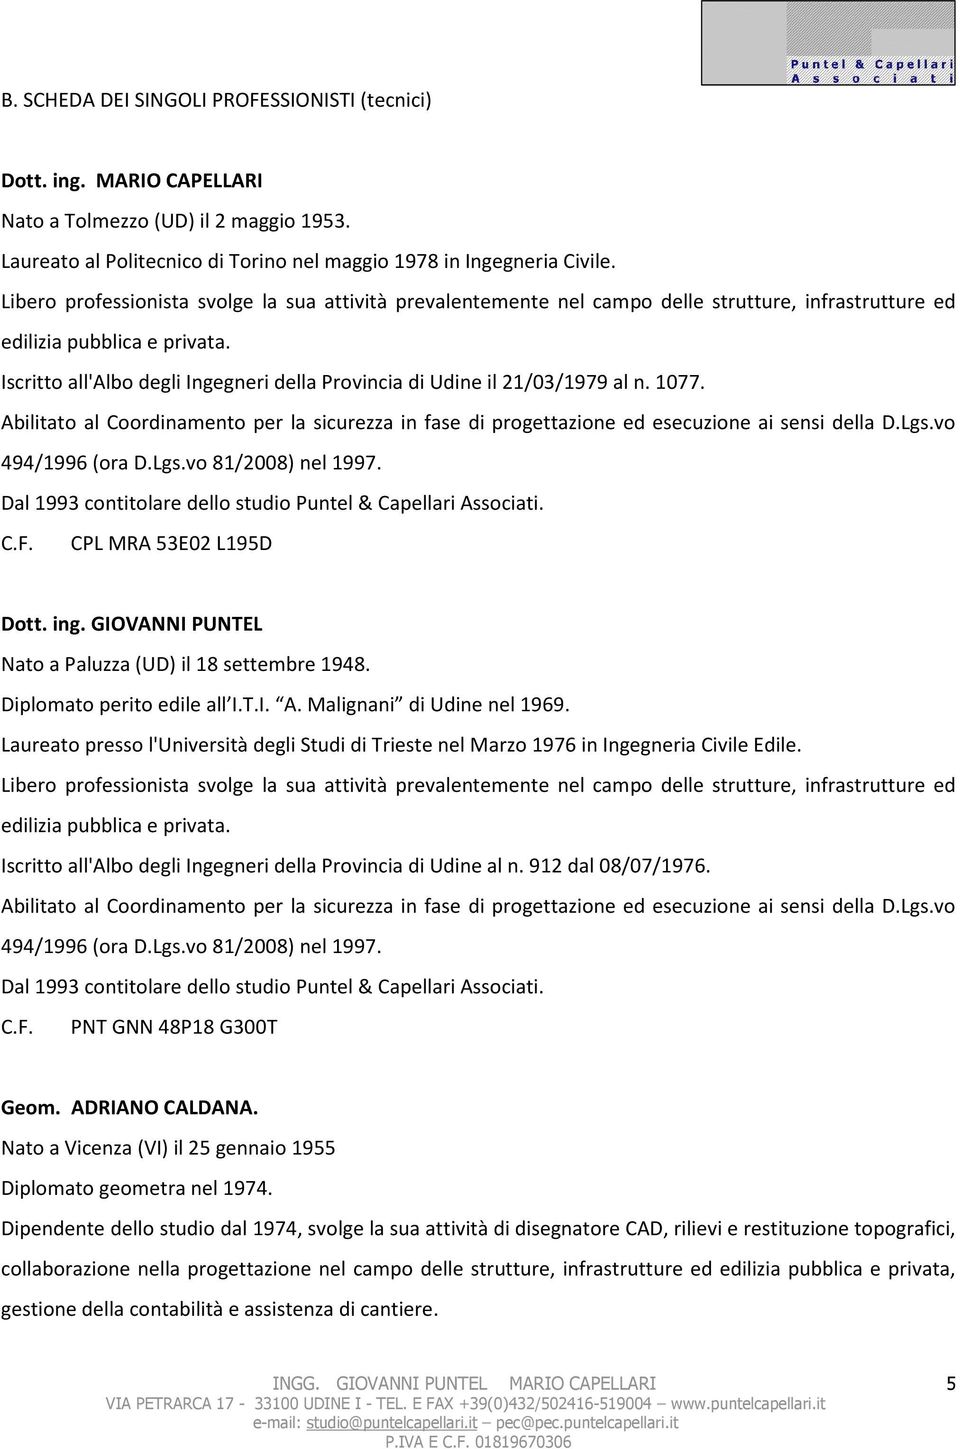 Iscritto all'albo degli Ingegneri della Provincia di Udine il 21/03/1979 al n. 1077. Abilitato al Coordinamento per la sicurezza in fase di progettazione ed esecuzione ai sensi della D.Lgs.